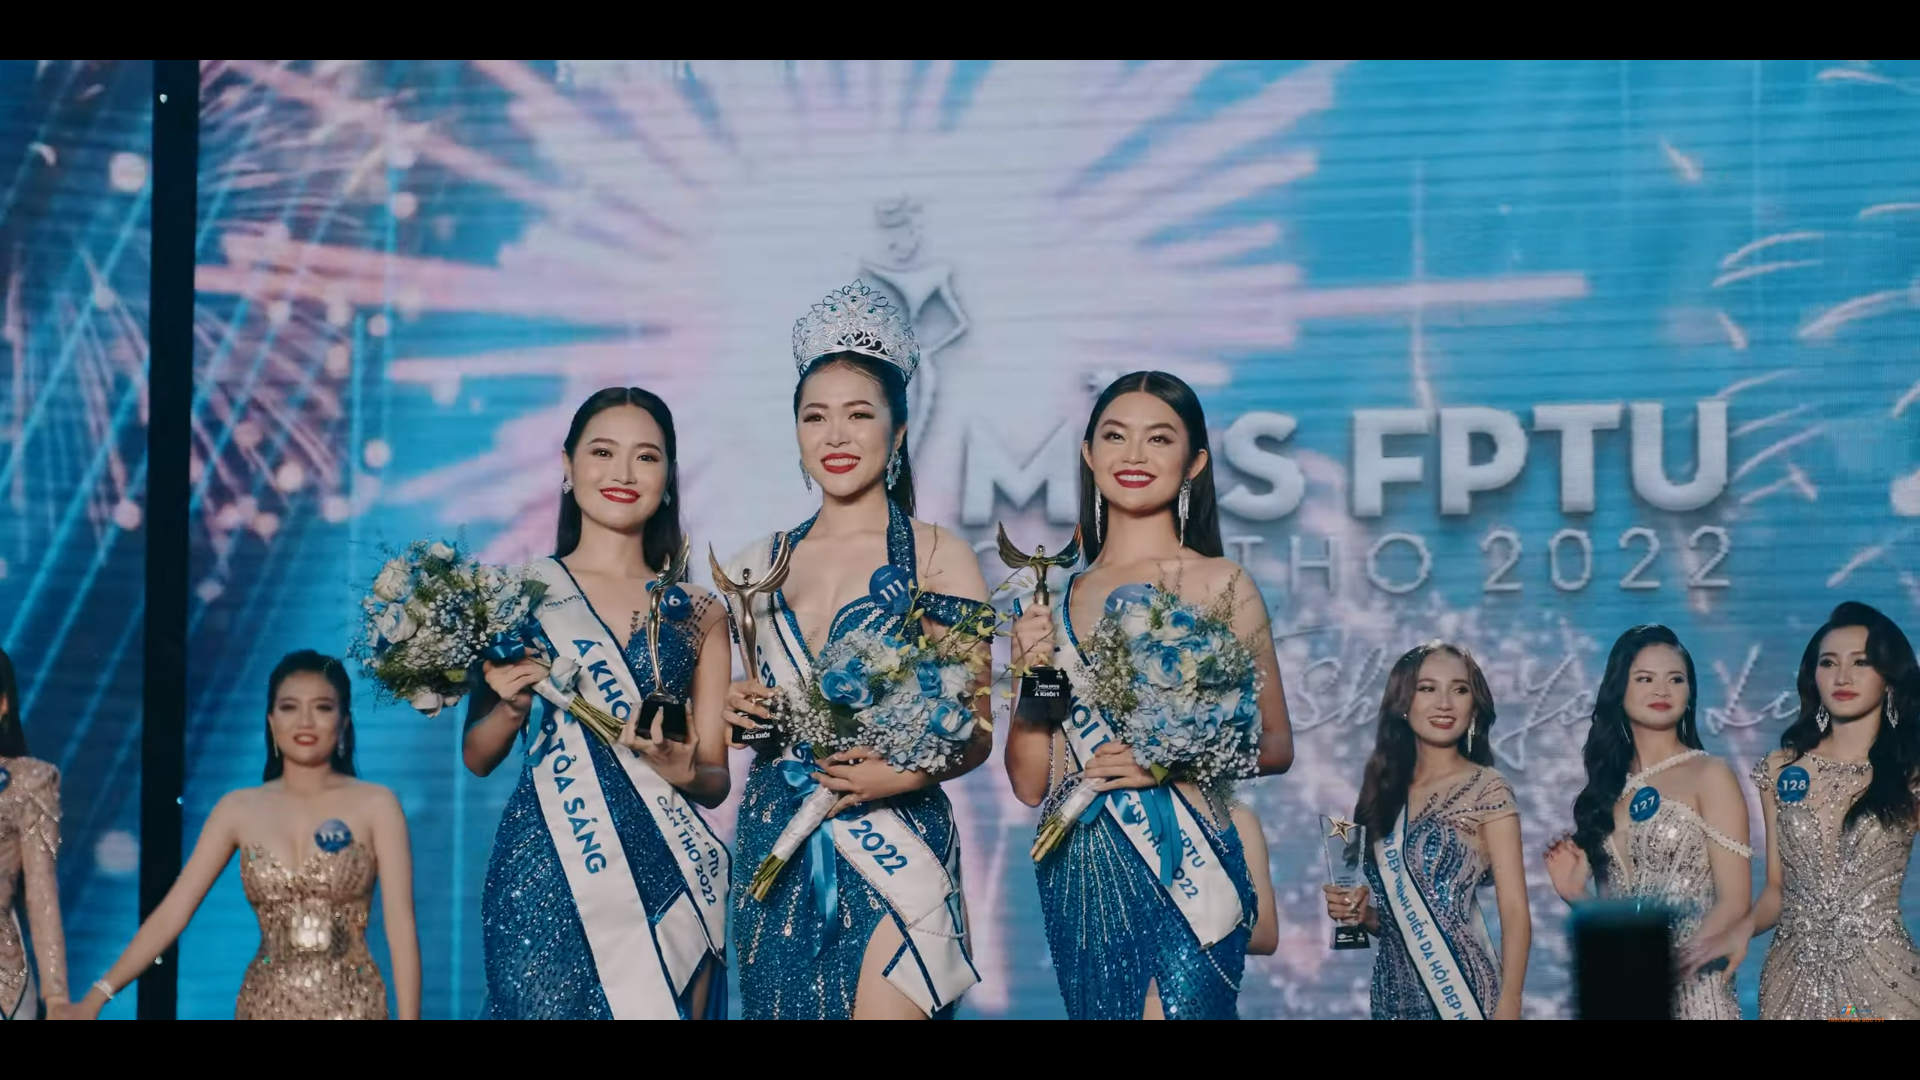 Toàn Cảnh Đêm Chung Kết Miss FPTU Cần Thơ 2022